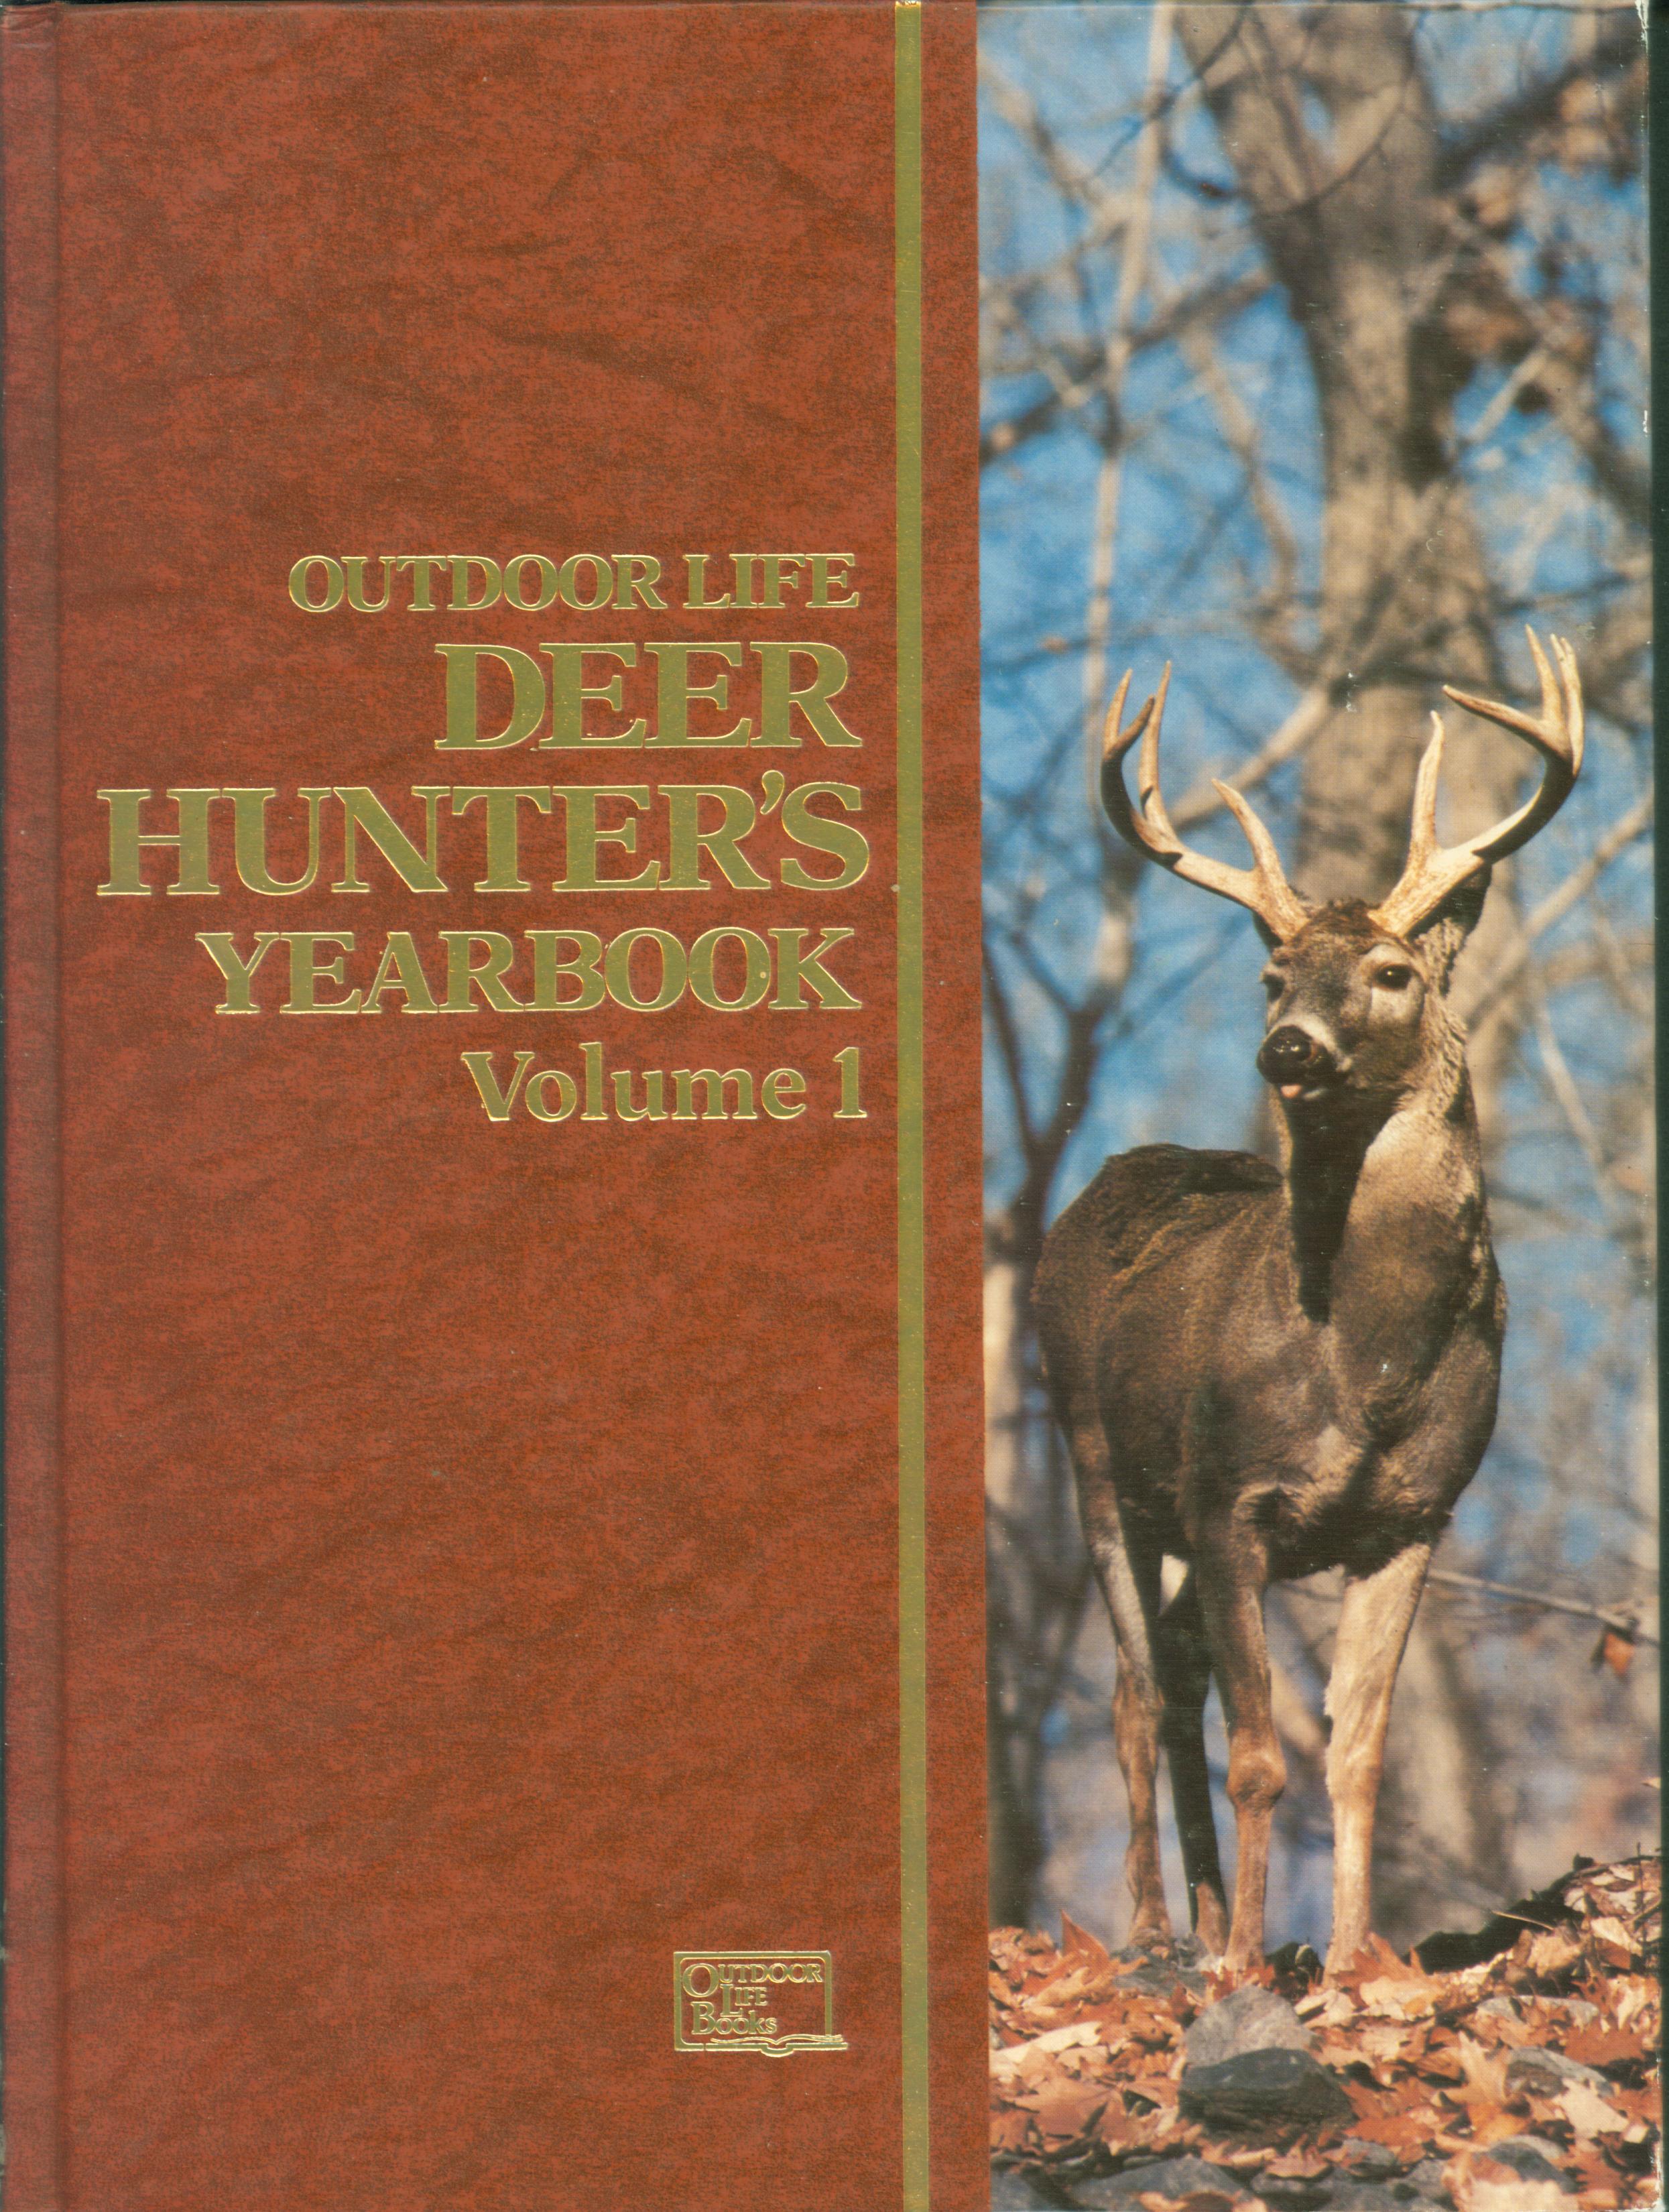 DEER HUNTER'S YEARBOOK, Volume 1 (1983).